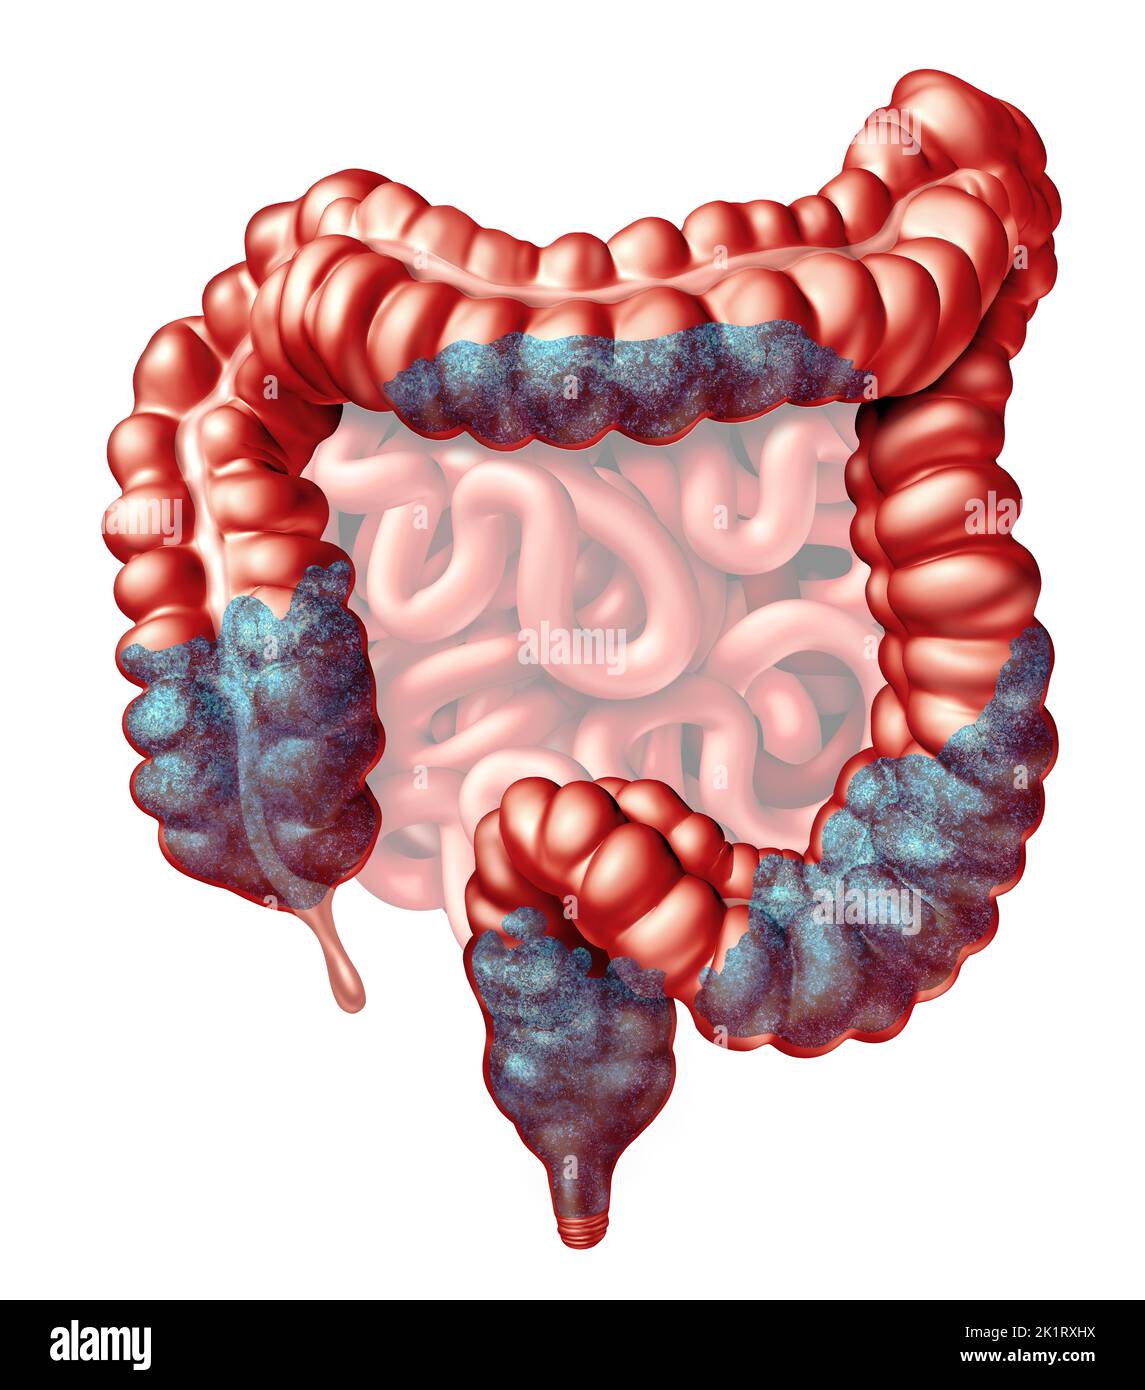 Costipazione anatomia e sintomi costipati come problema di movimento intestinale feci come un intestino e retto di un sistema digestivo come un gastrointestinale. Foto Stock